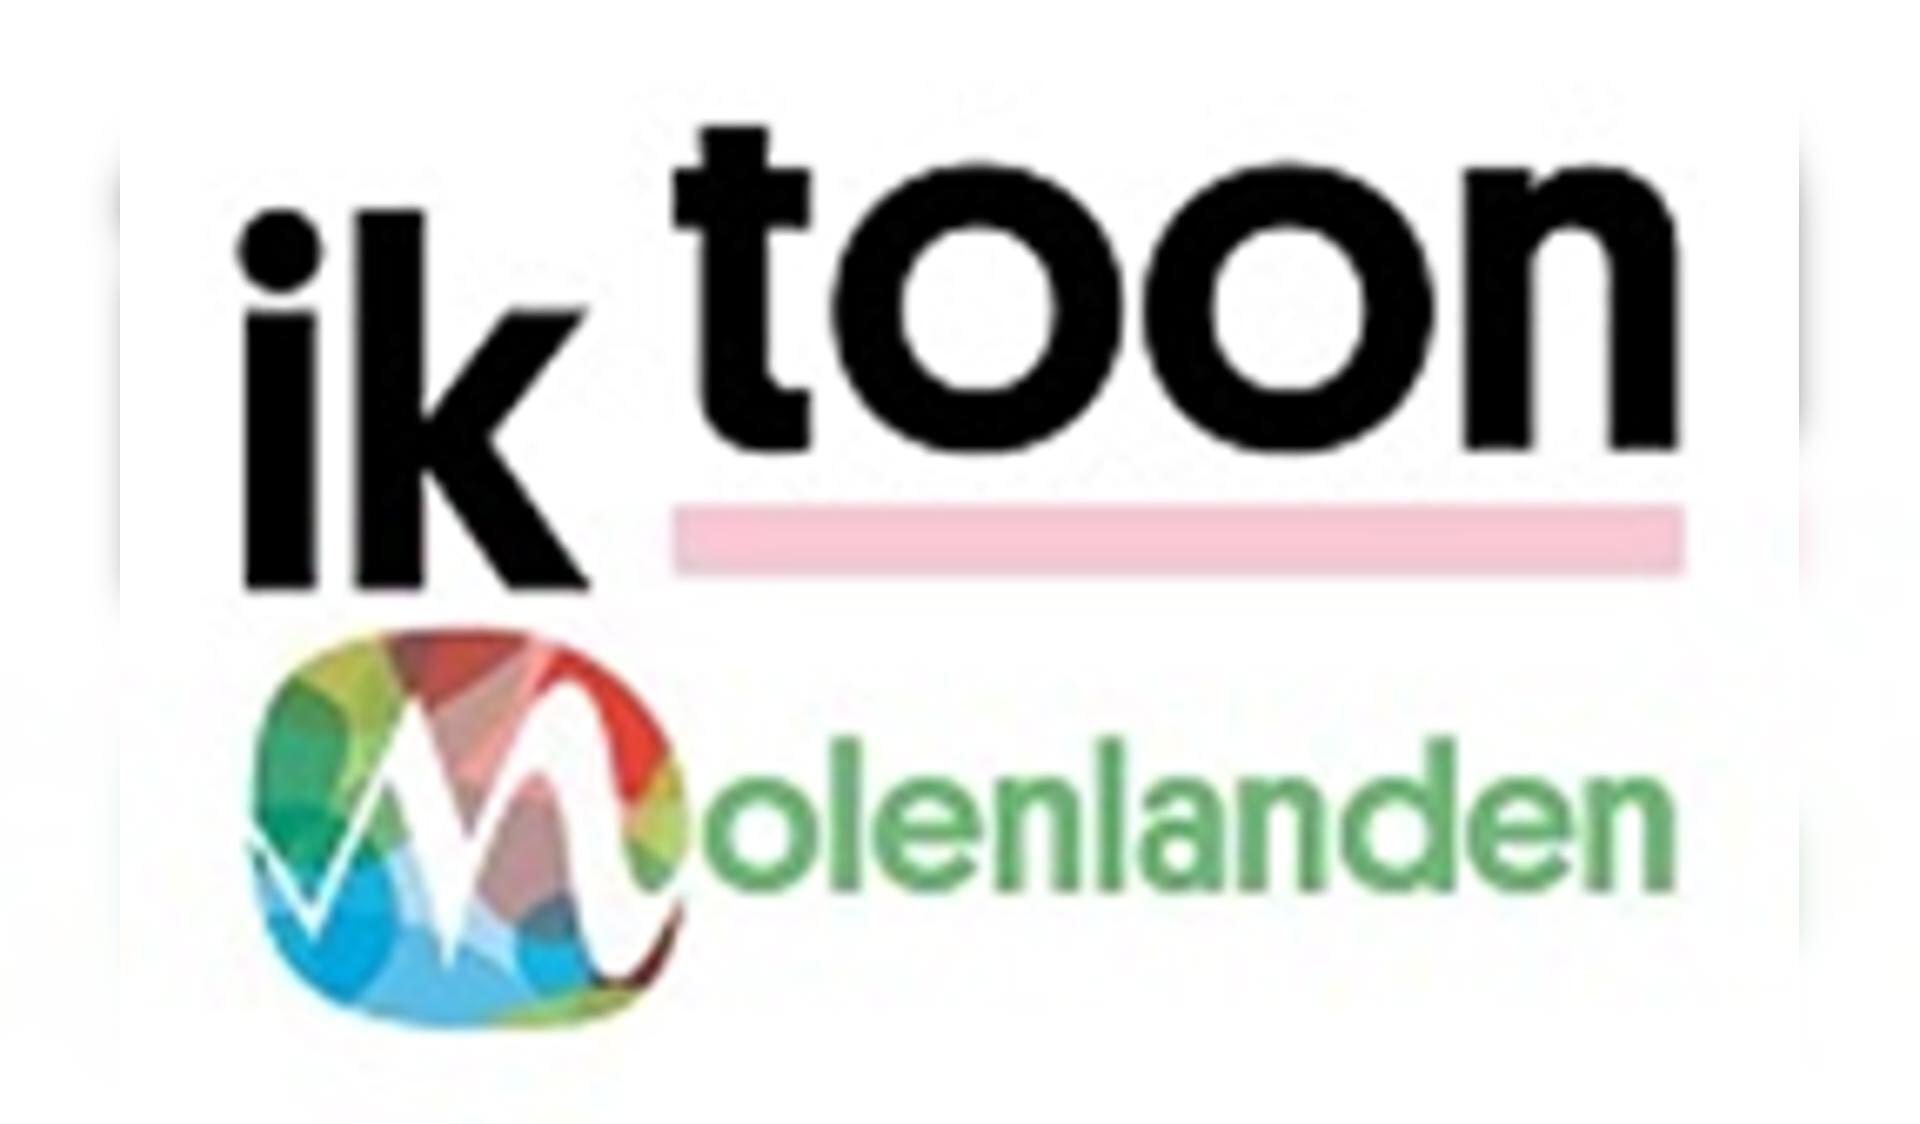 • Het logo van IkToon Molenlanden.